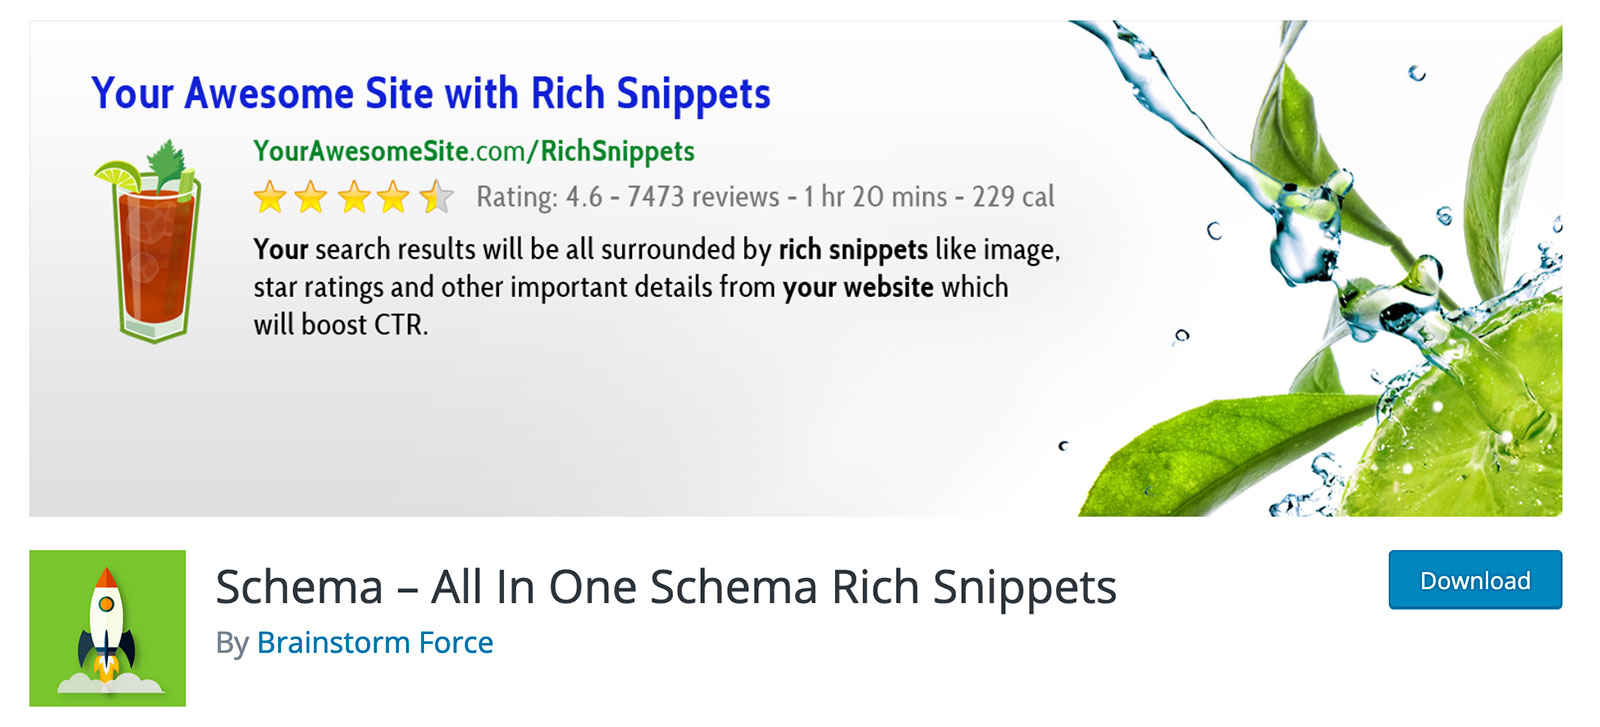 Schema – All In One Schema Rich Snippets